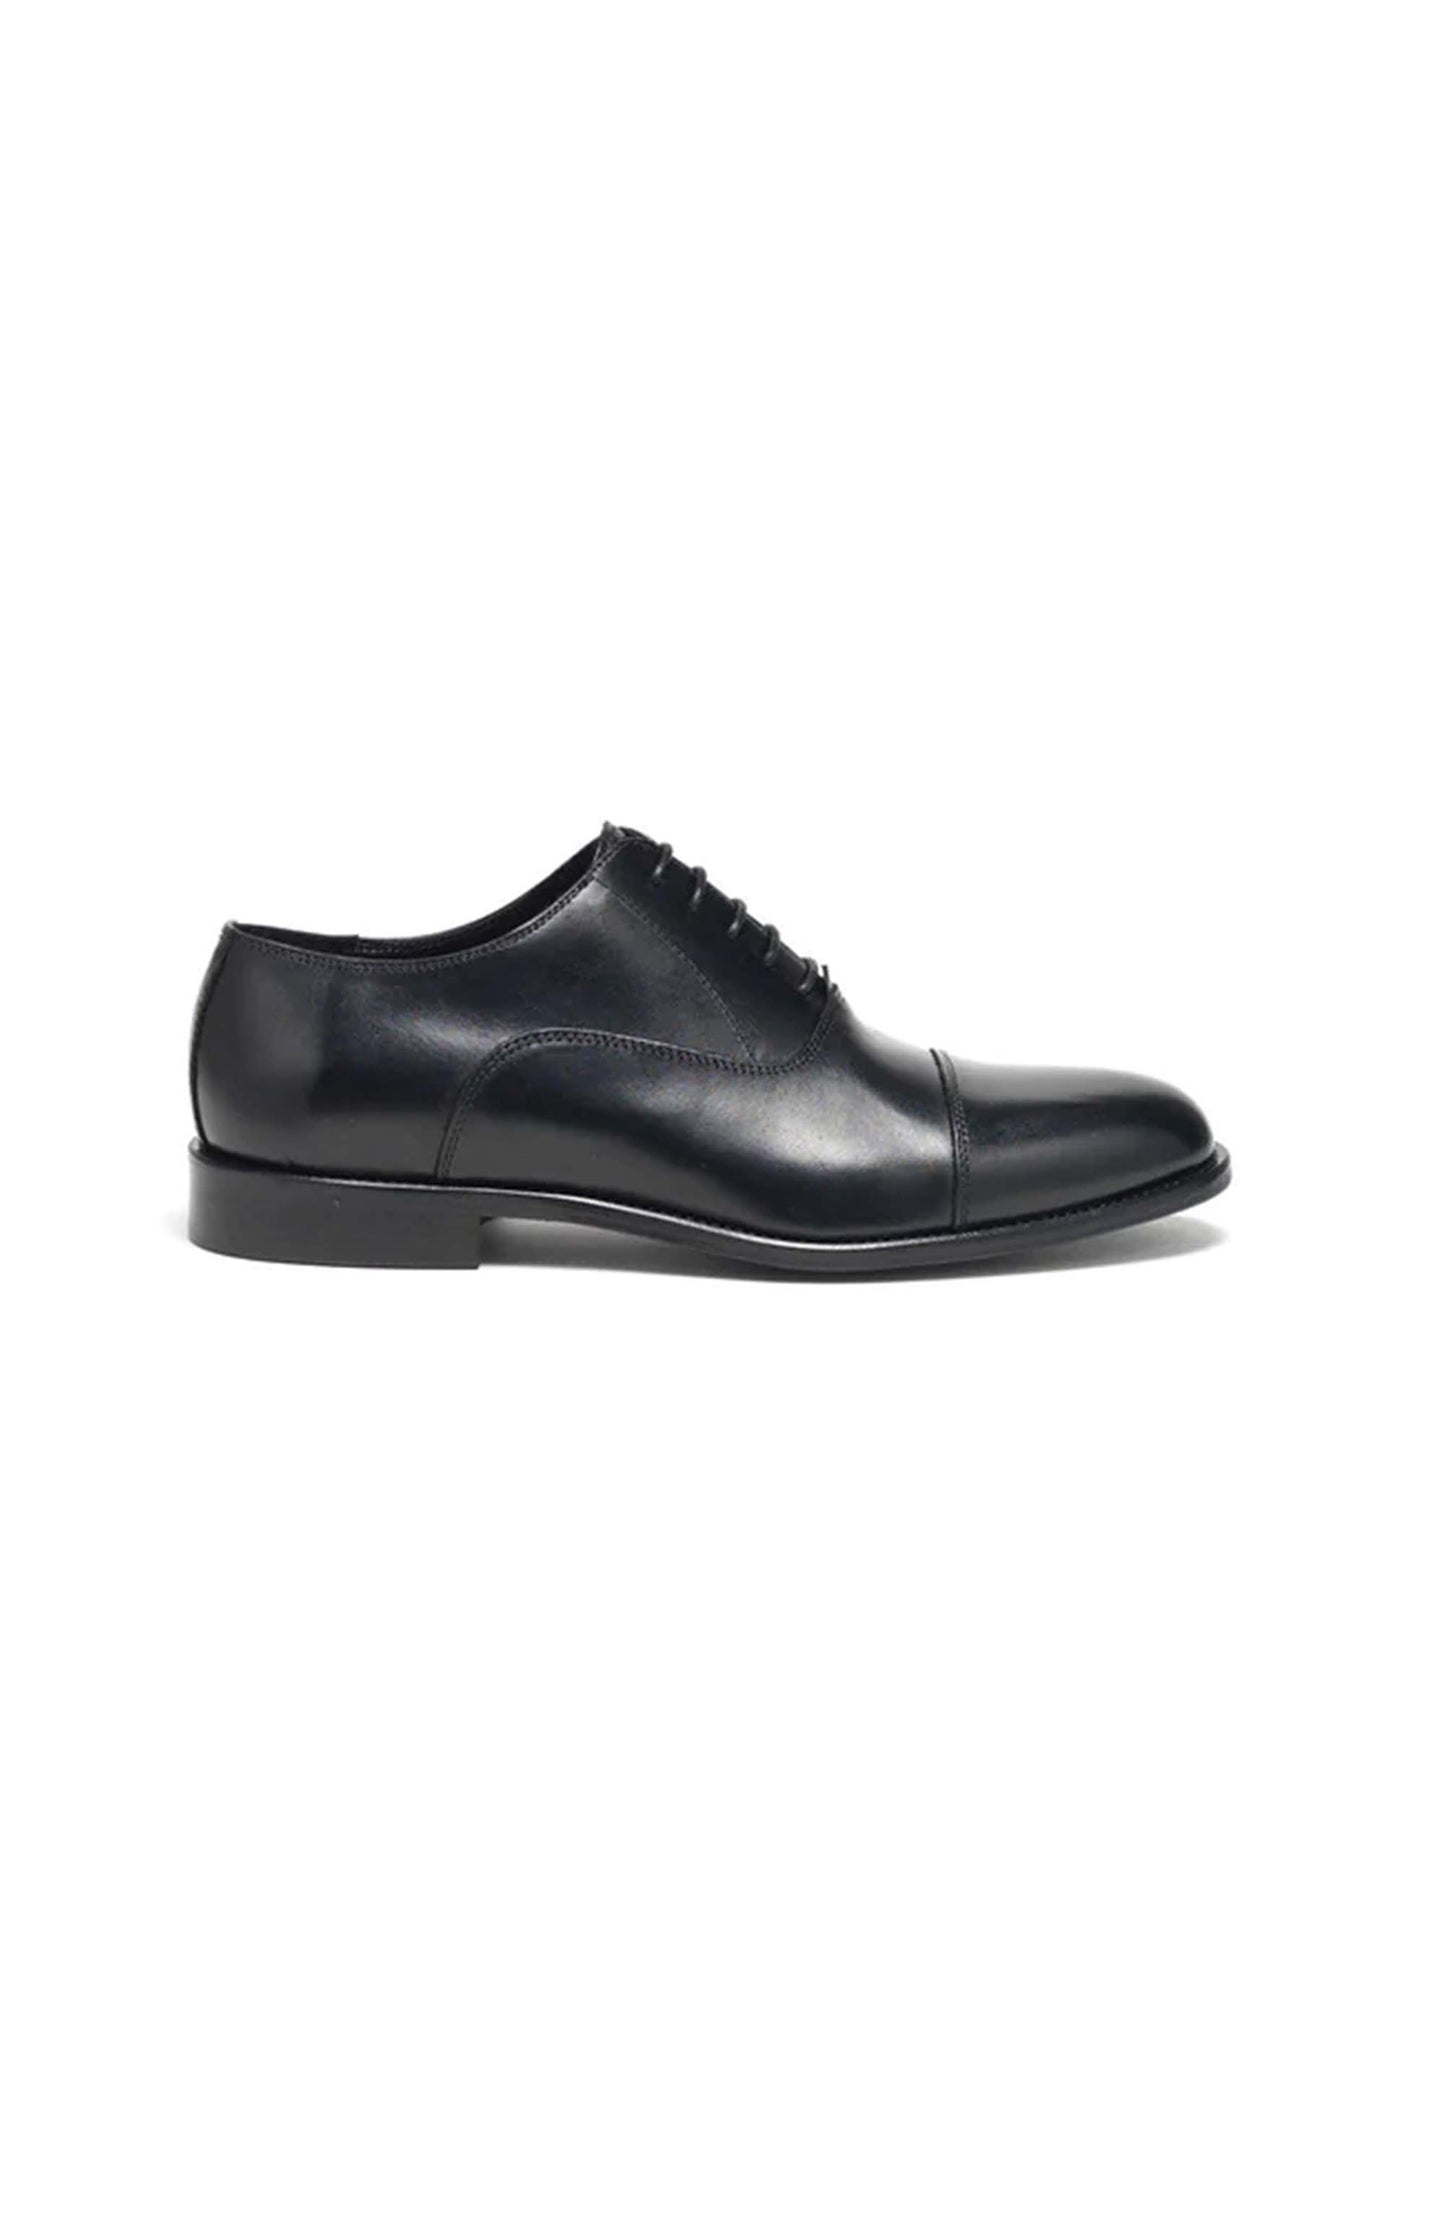 scarpa classica uomo in pelle nera Del Mare 1911 dettaglio lato